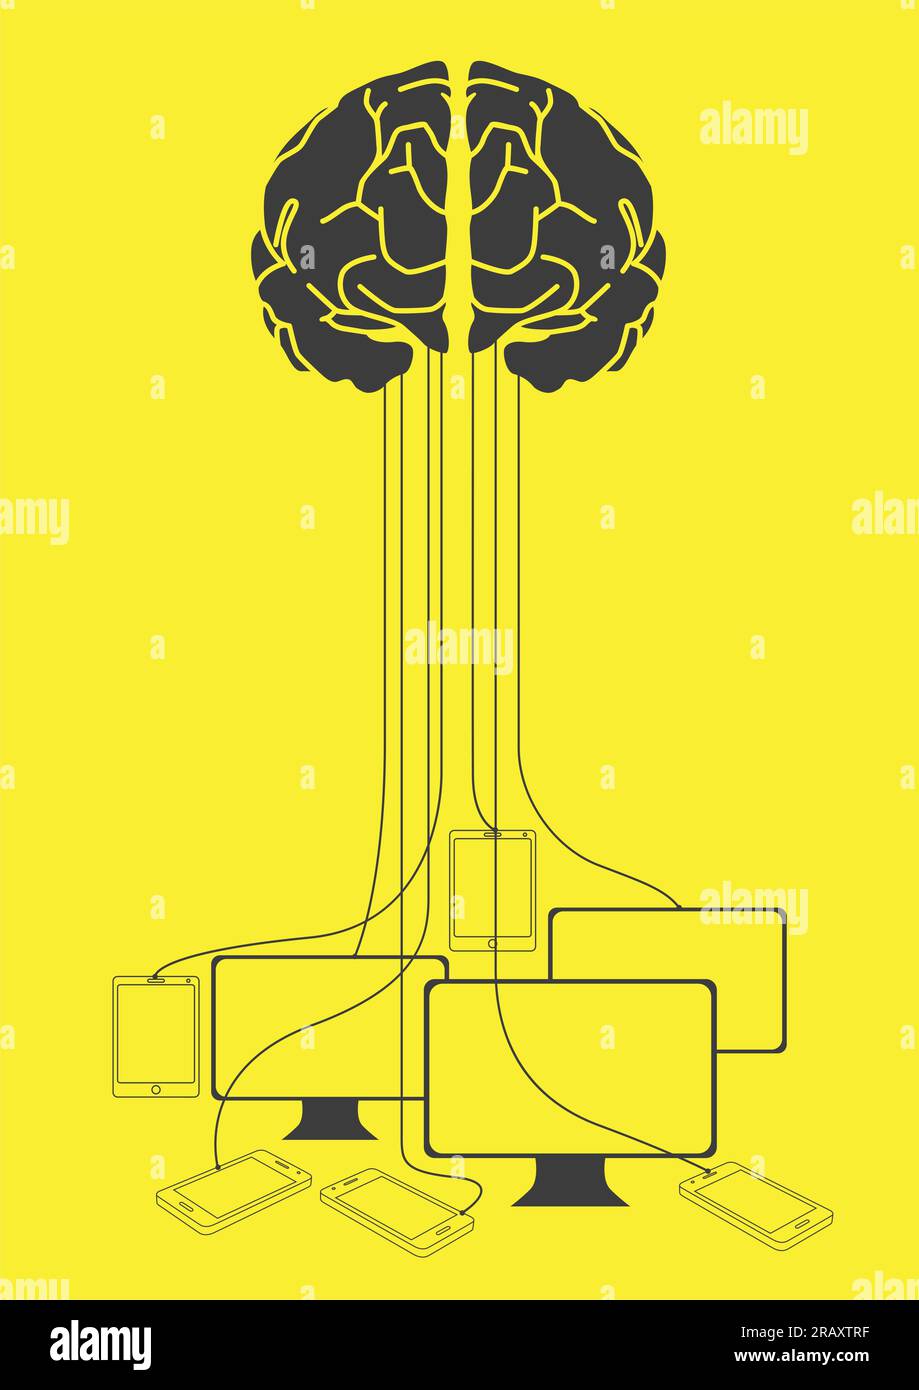 Illustrazione grafica del filo cerebrale umano collegato a dispositivi elettronici Illustrazione Vettoriale